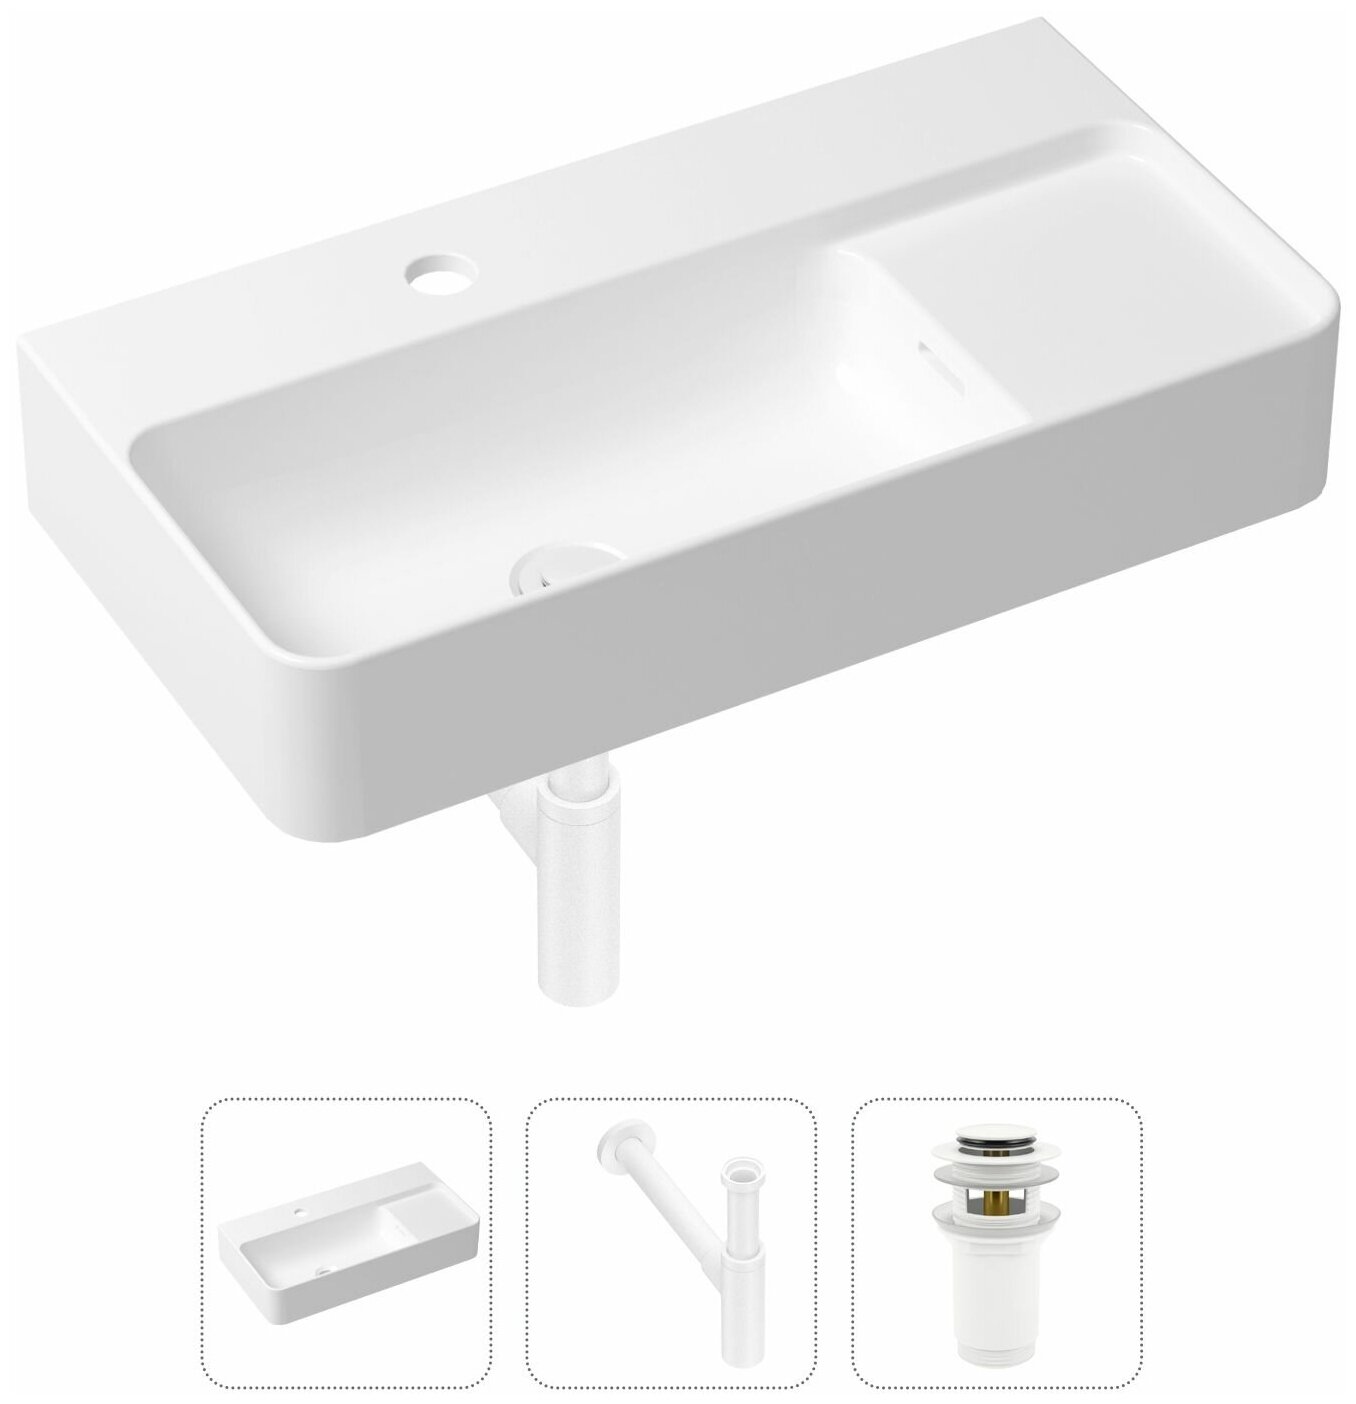 Комплект 3 в 1 Lavinia Boho Bathroom Sink 21520530: накладная фарфоровая раковина 60 см, металлический сифон, донный клапан